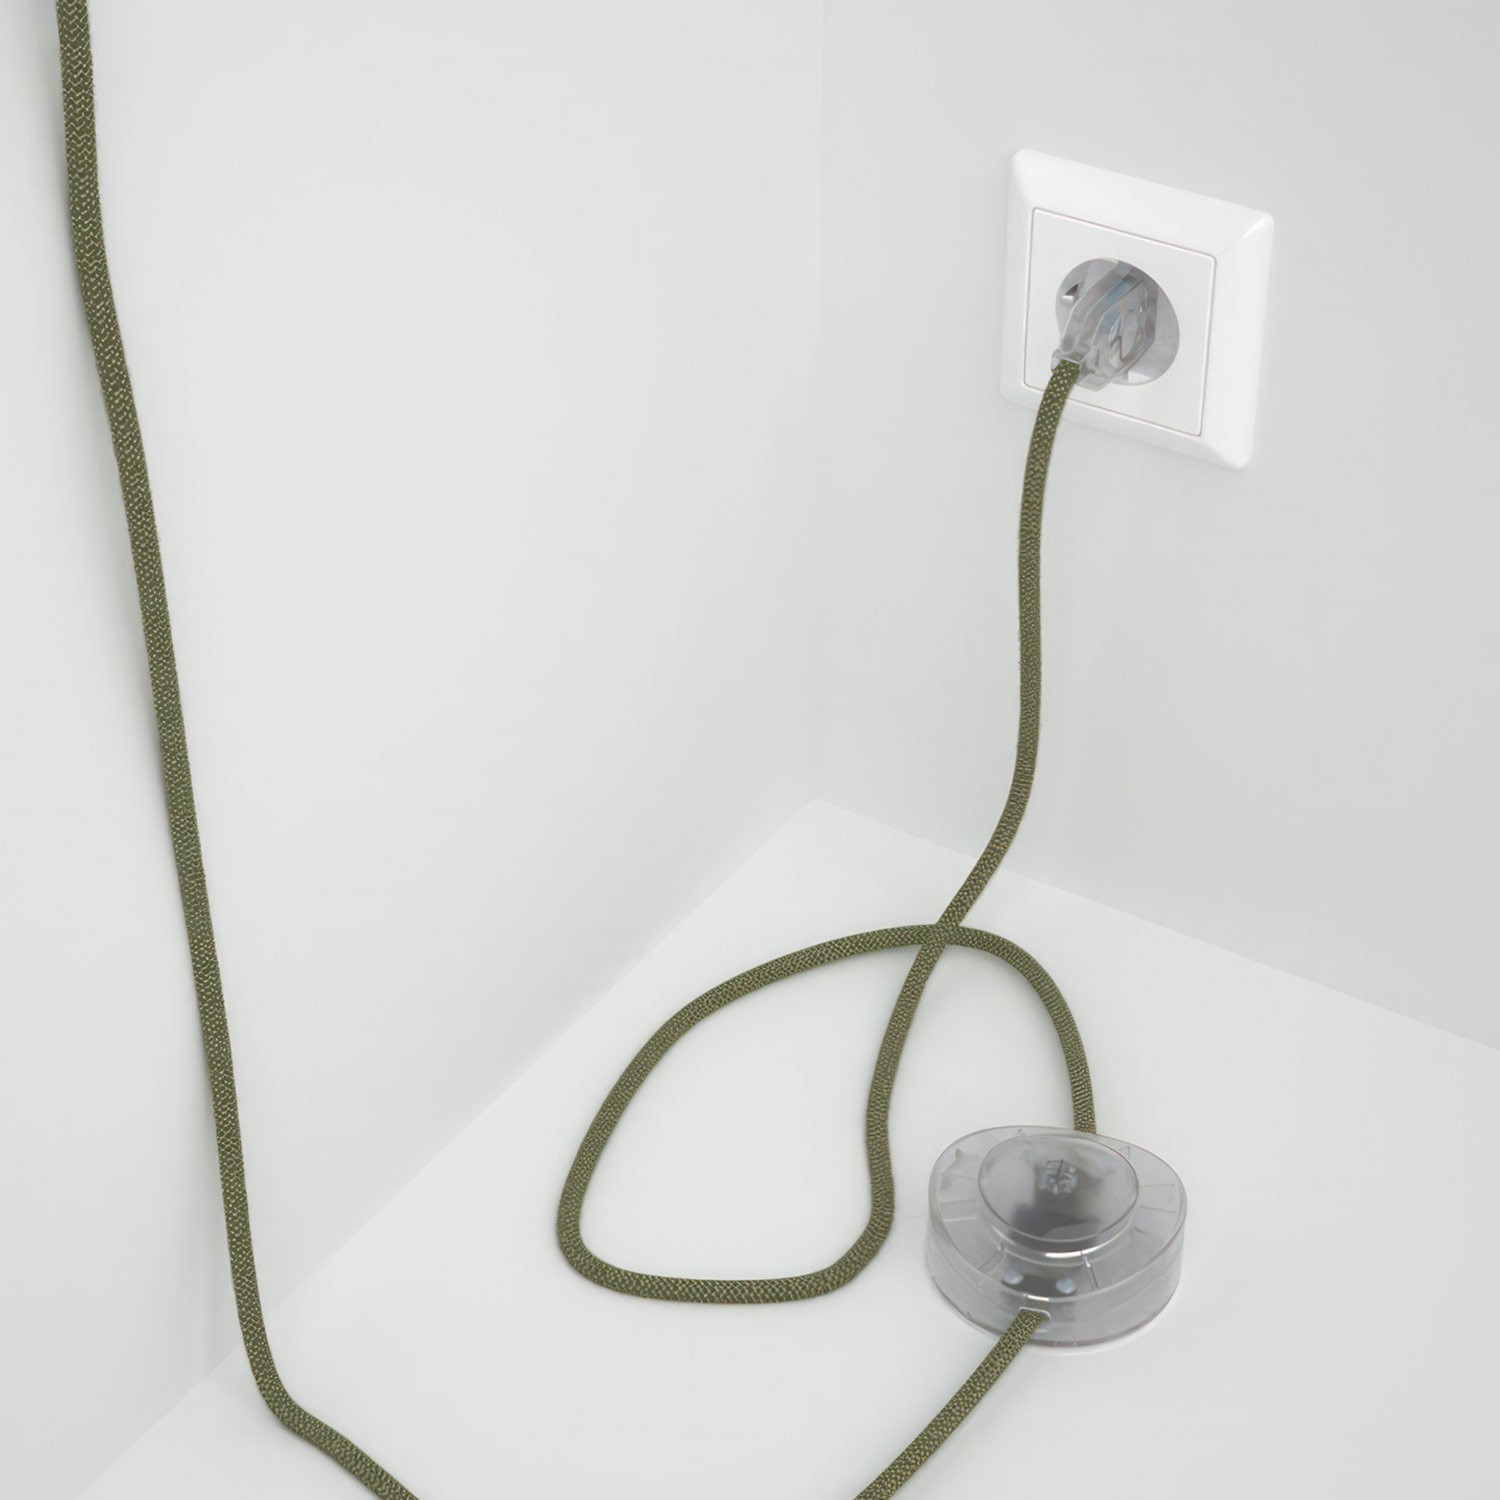 Cableado para lámpara de pie, cable RD72 ZigZag Verde Tomillo 3 m. Elige tu el color de la clavija y del interruptor!